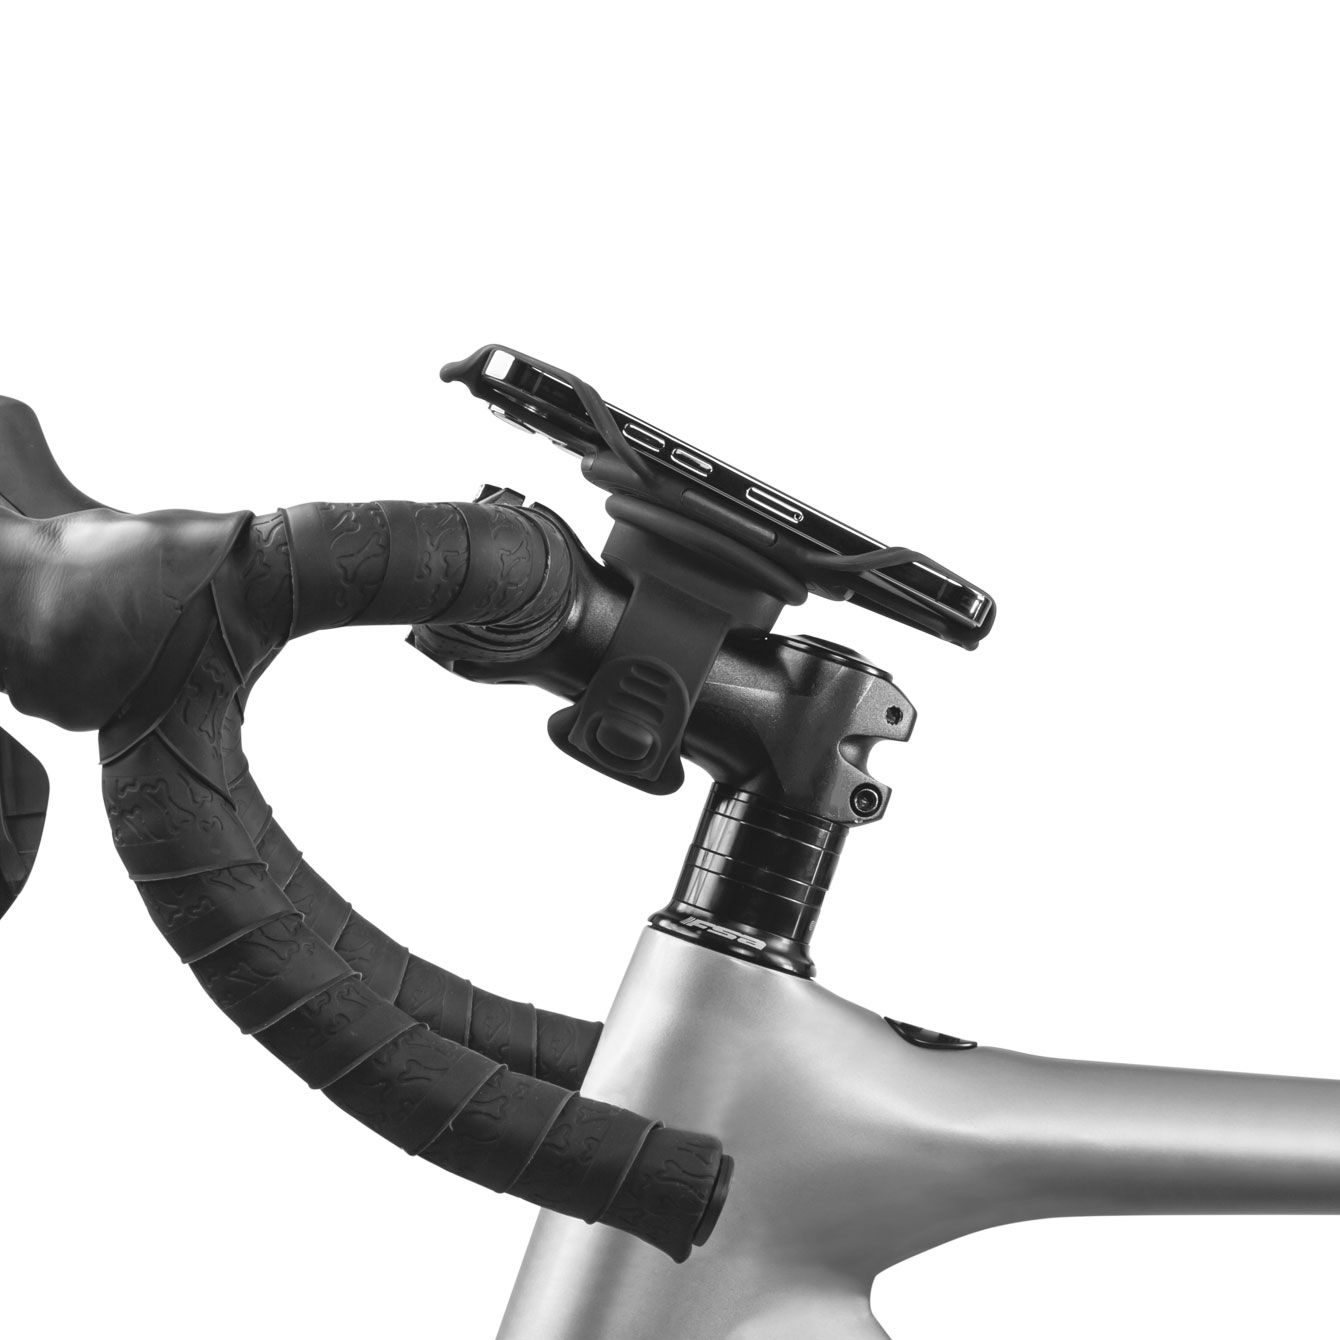  Bộ phụ kiện cố định điện thoại dùng cho chạy bộ và đạp xe 